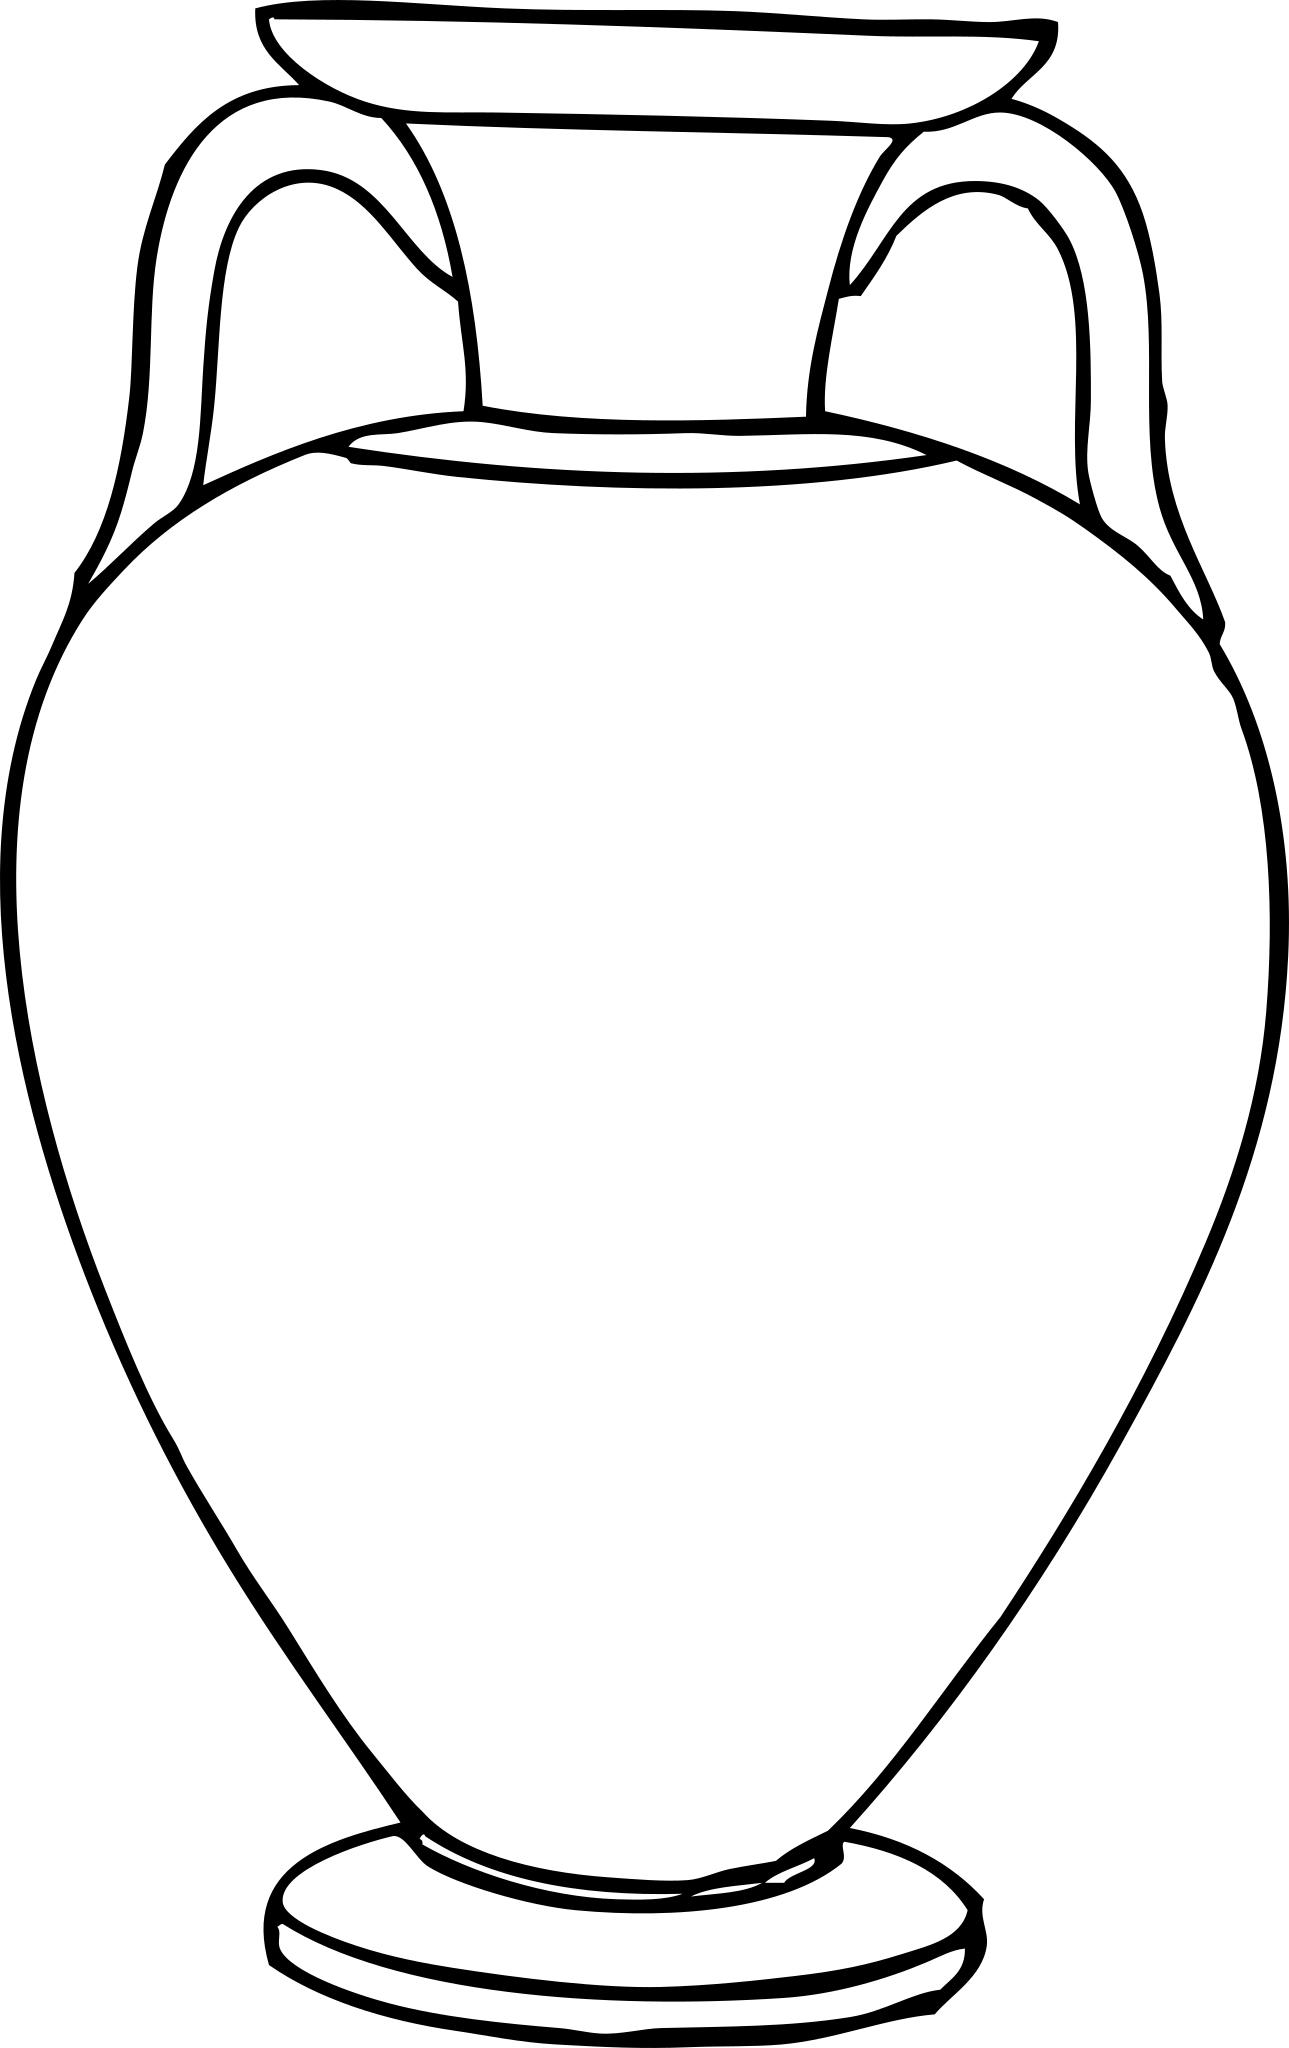 Древнегреческая ваза рисунок Амфора